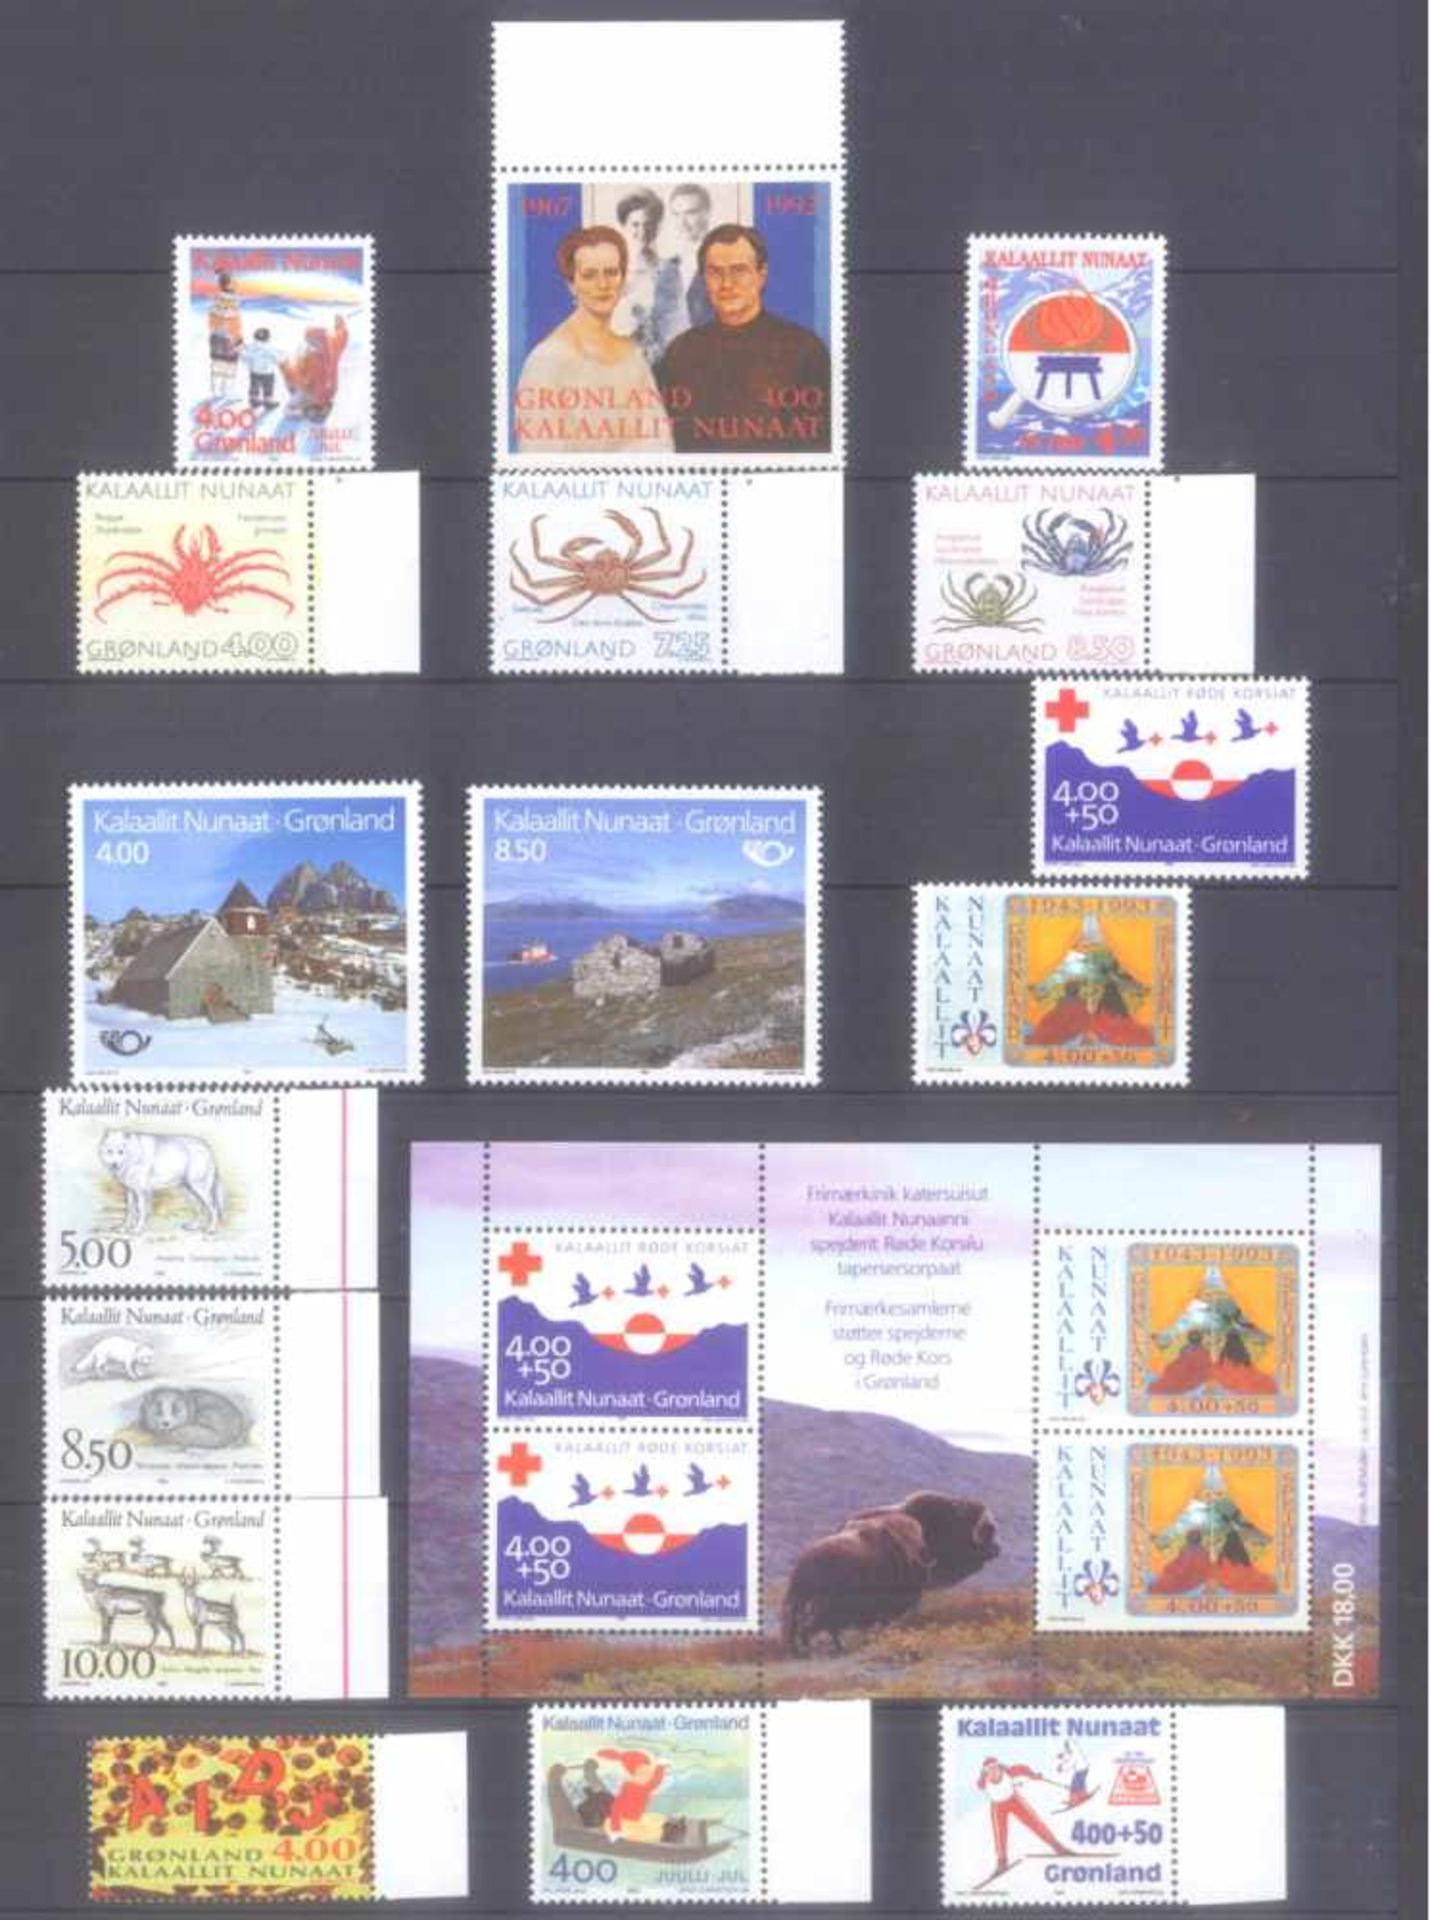 GRÖNLAND 1988-1995, Katalogwert fast 400,- Euro.komplette postfrische Sammlung auf Steckseiten, es - Bild 3 aus 5